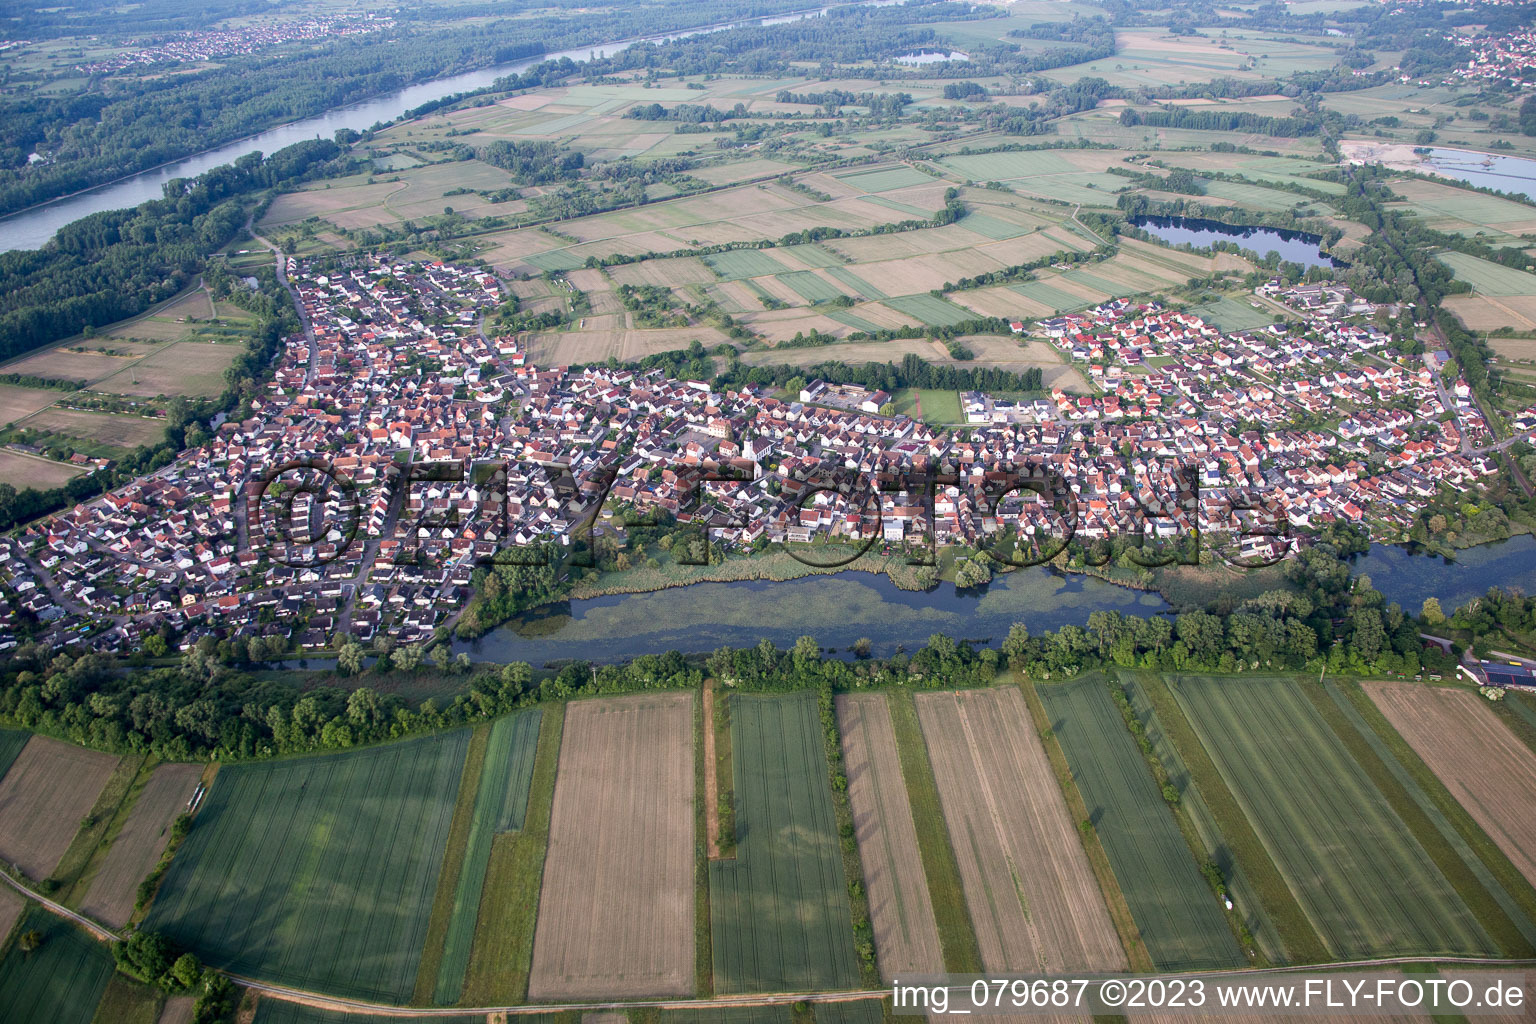 Photographie aérienne de Neuburg dans le département Rhénanie-Palatinat, Allemagne